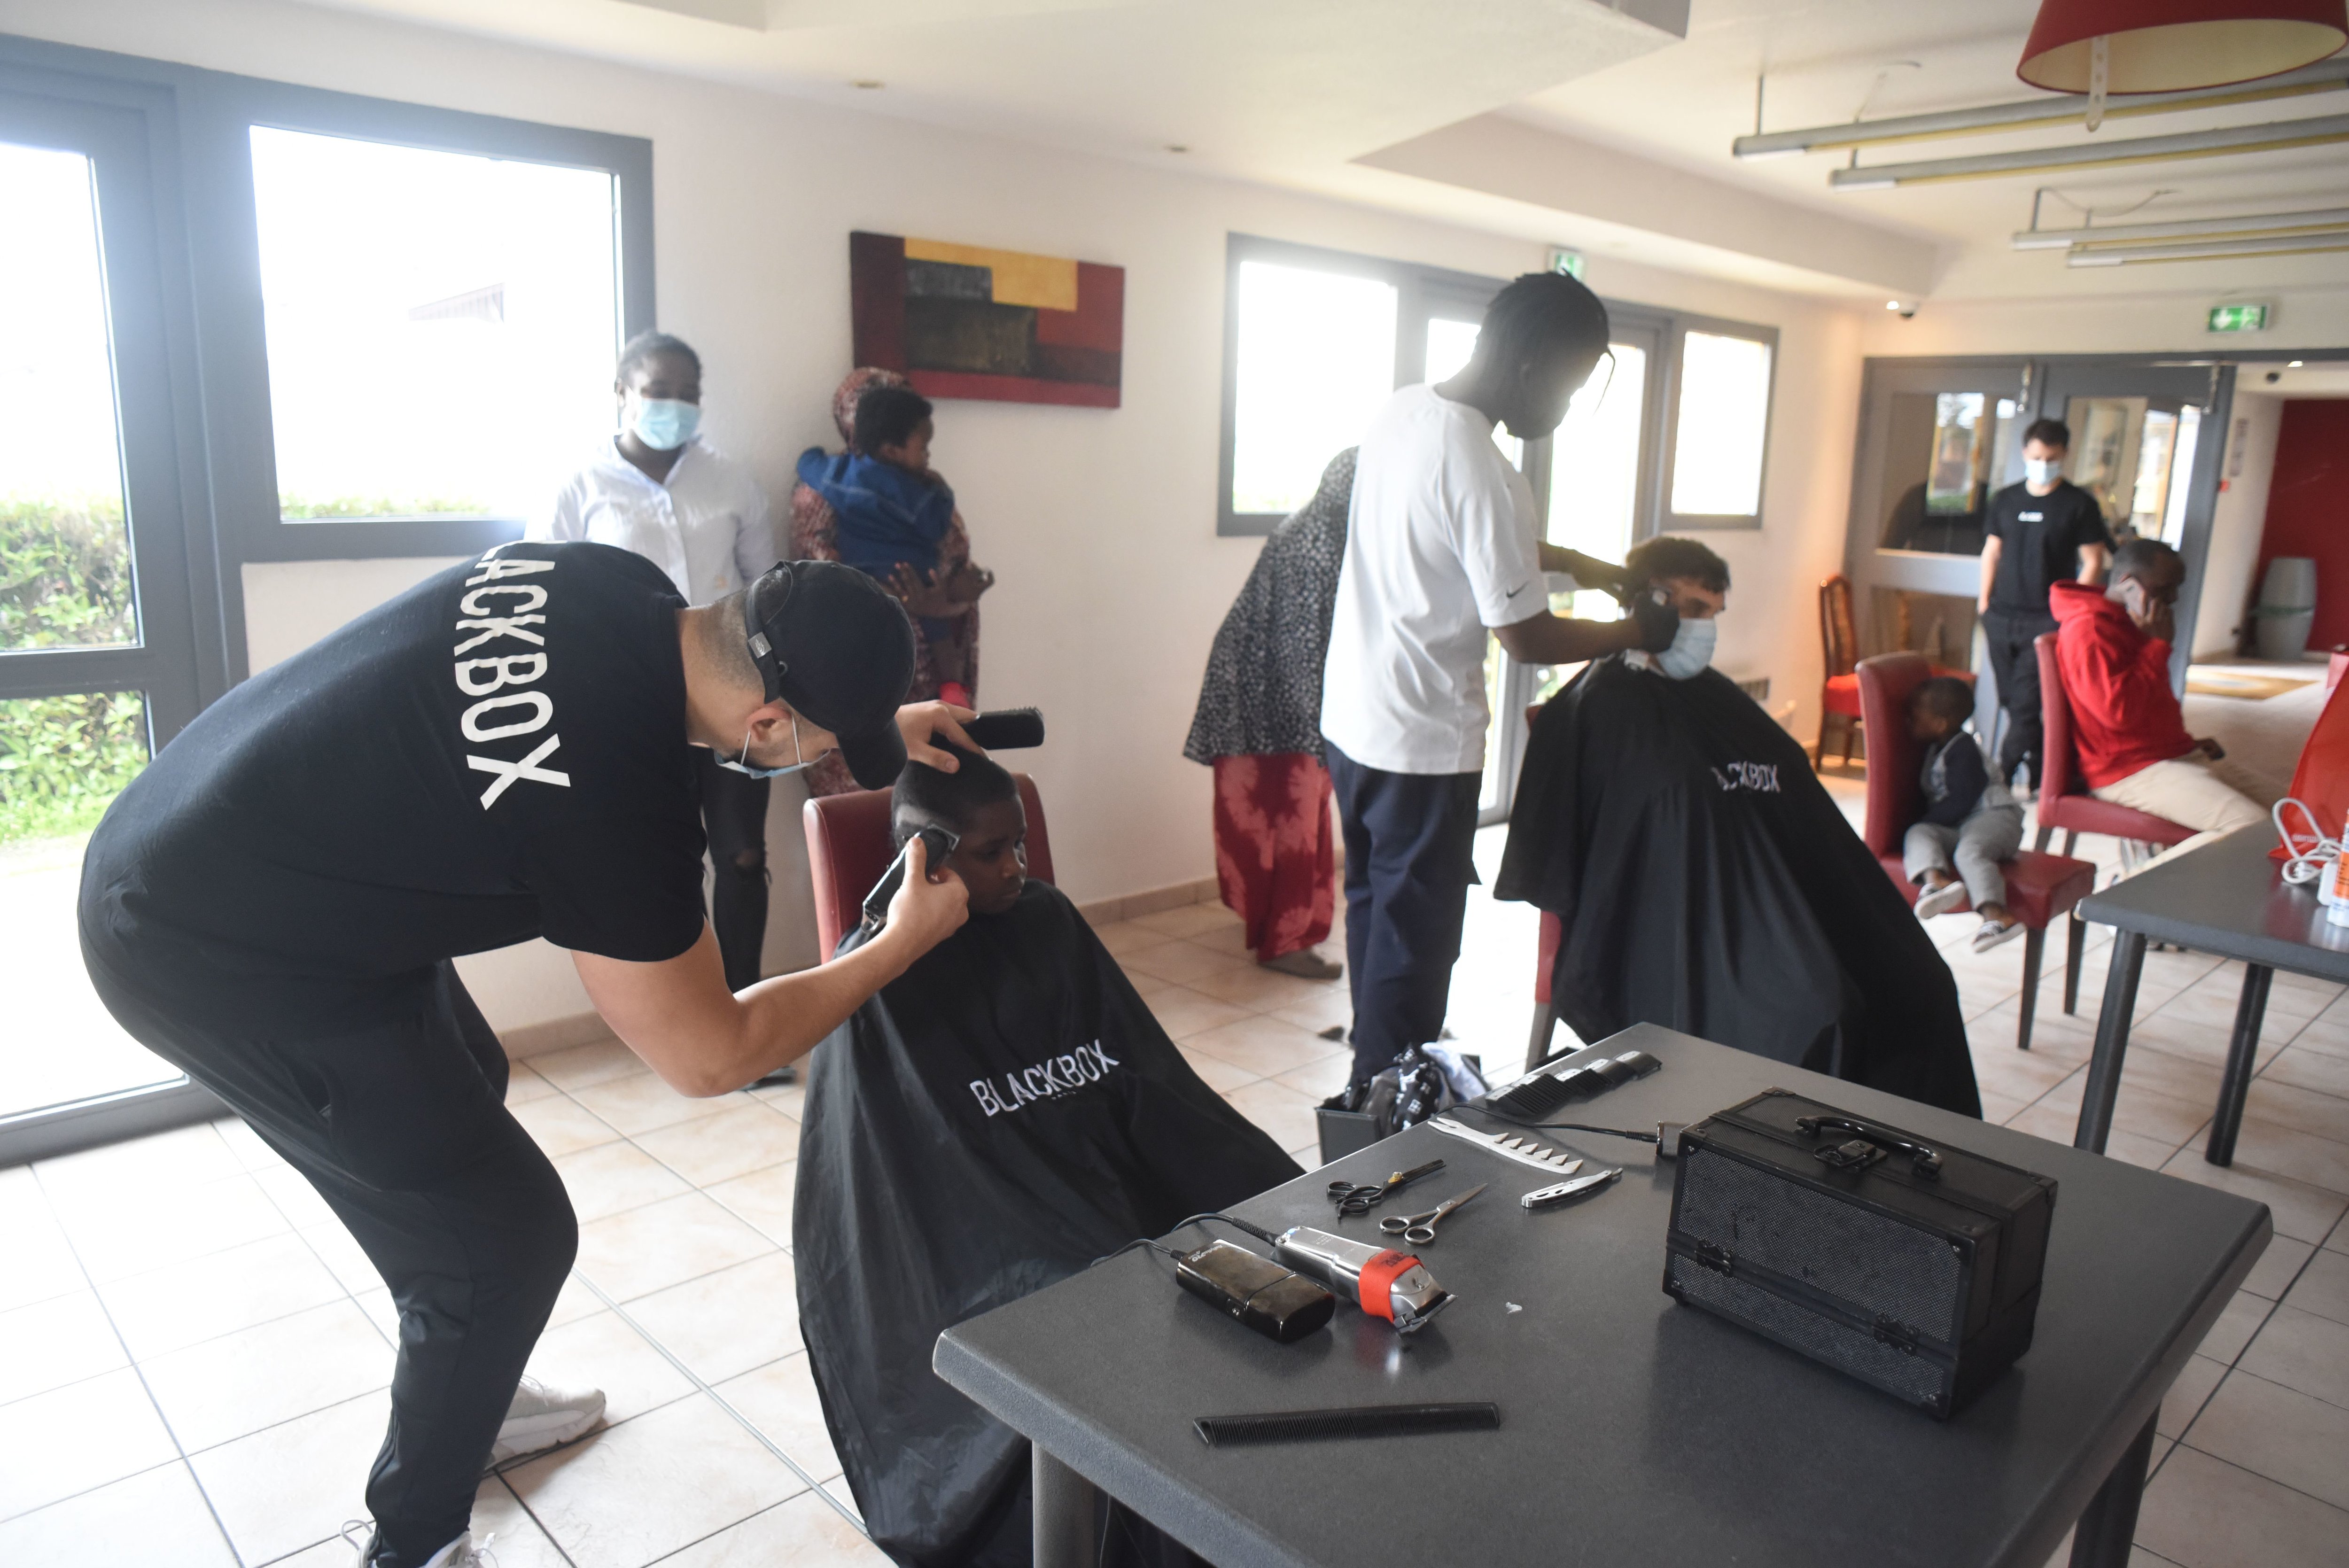 L’association Culture du cœur organise avec la chaîne de coiffure Black Box une opération de solidarité dans trois hôtel sociaux de Sarcelles et Gonesse. LP/F.N.